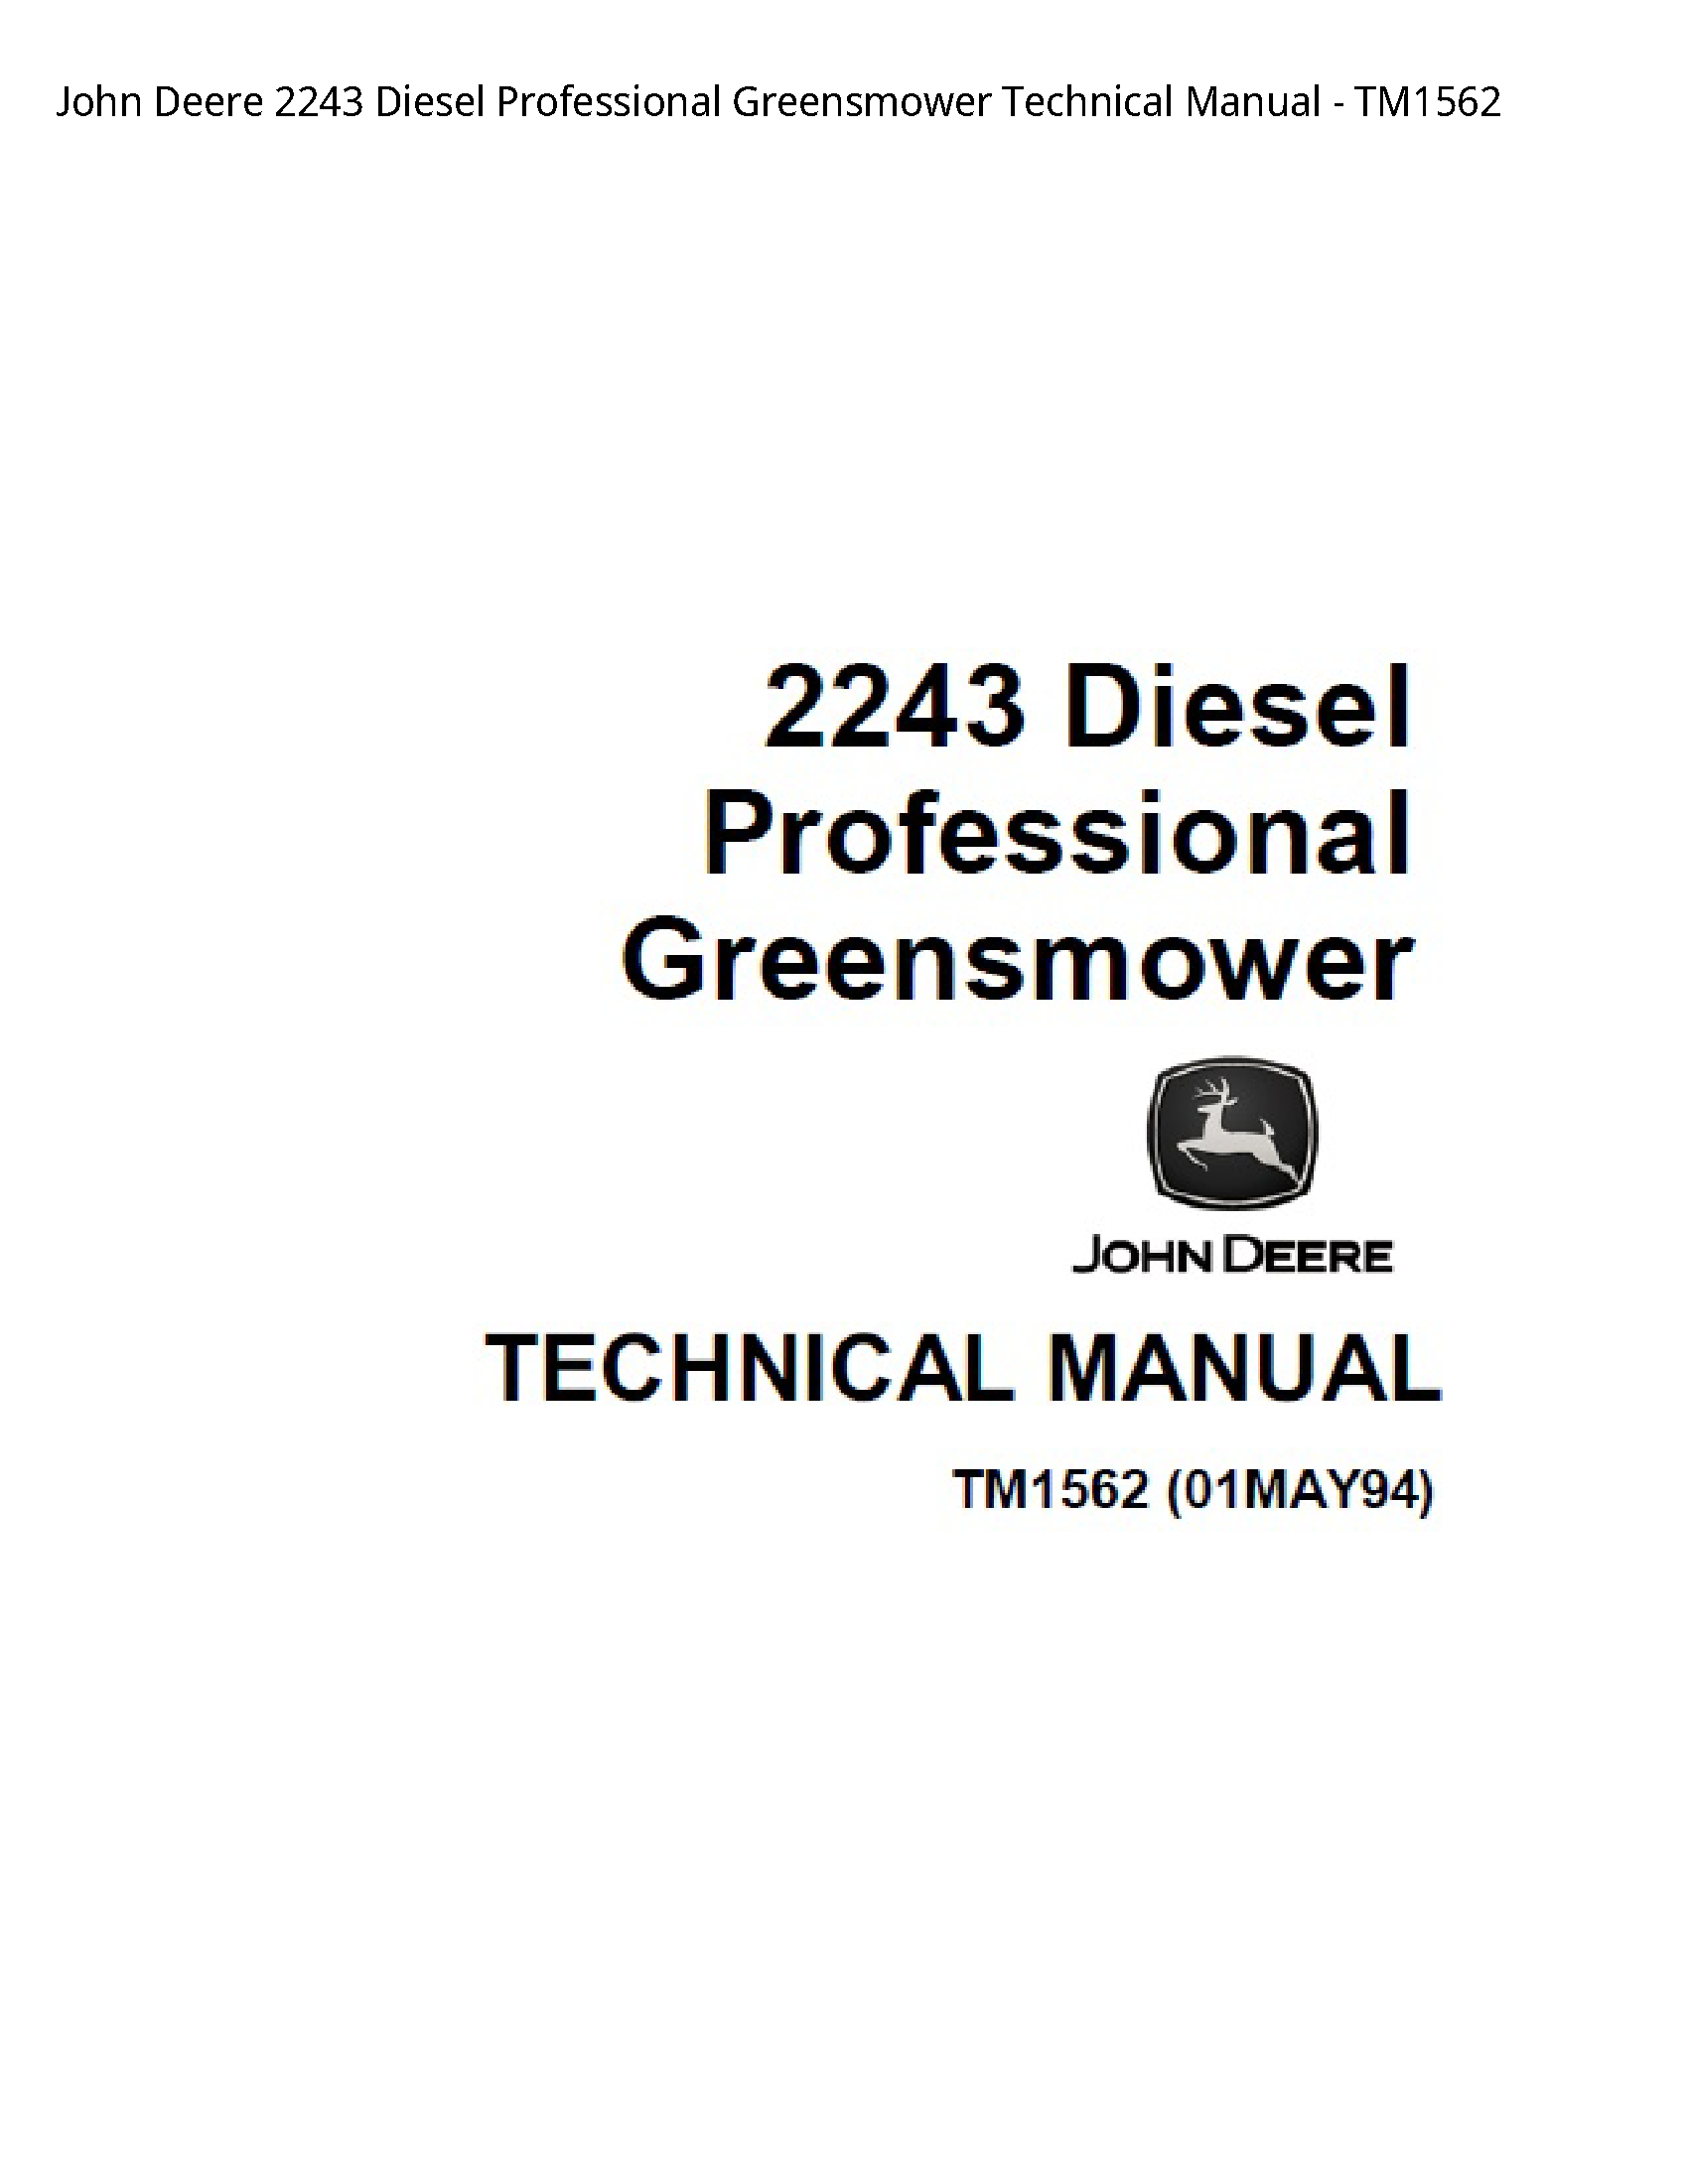 John Deere 2243 Diesel Professional Greensmower Technical manual